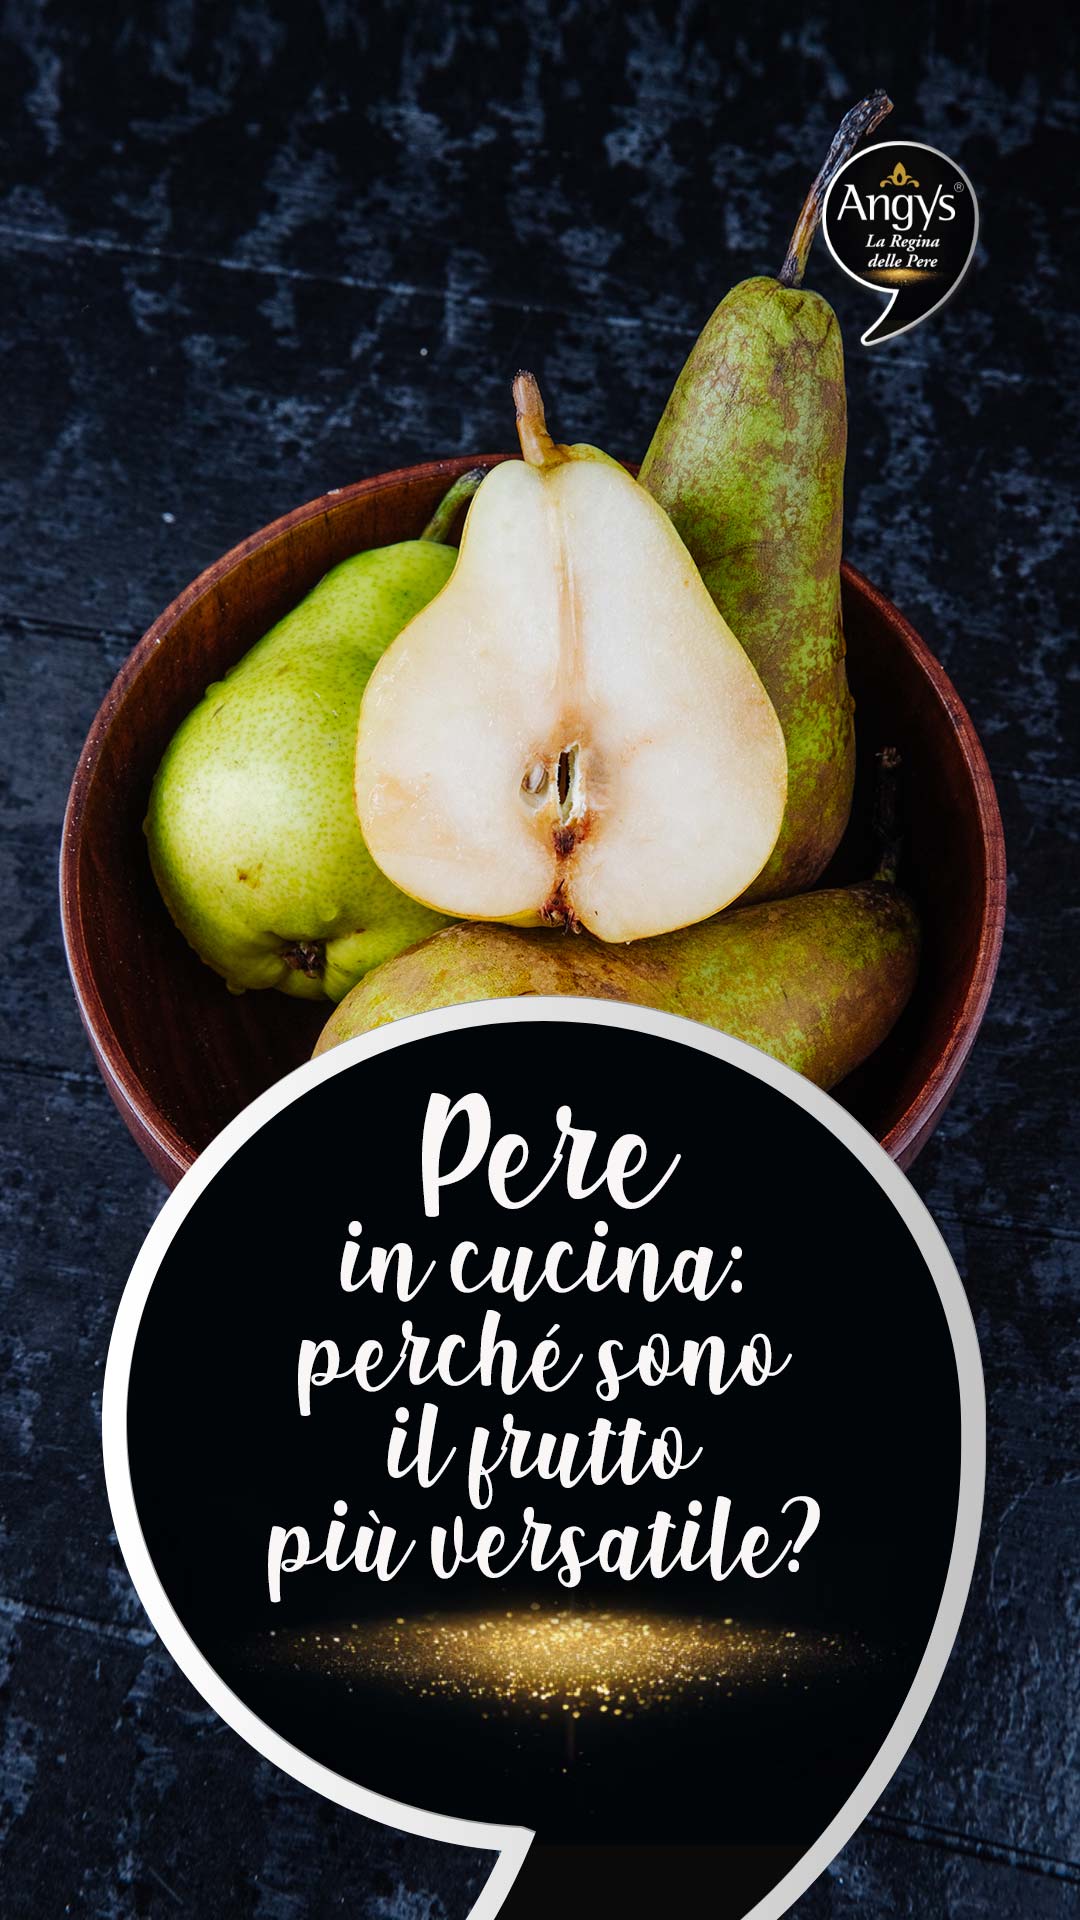 Angys - Pere in cucina: perché sono il frutto più versatile?